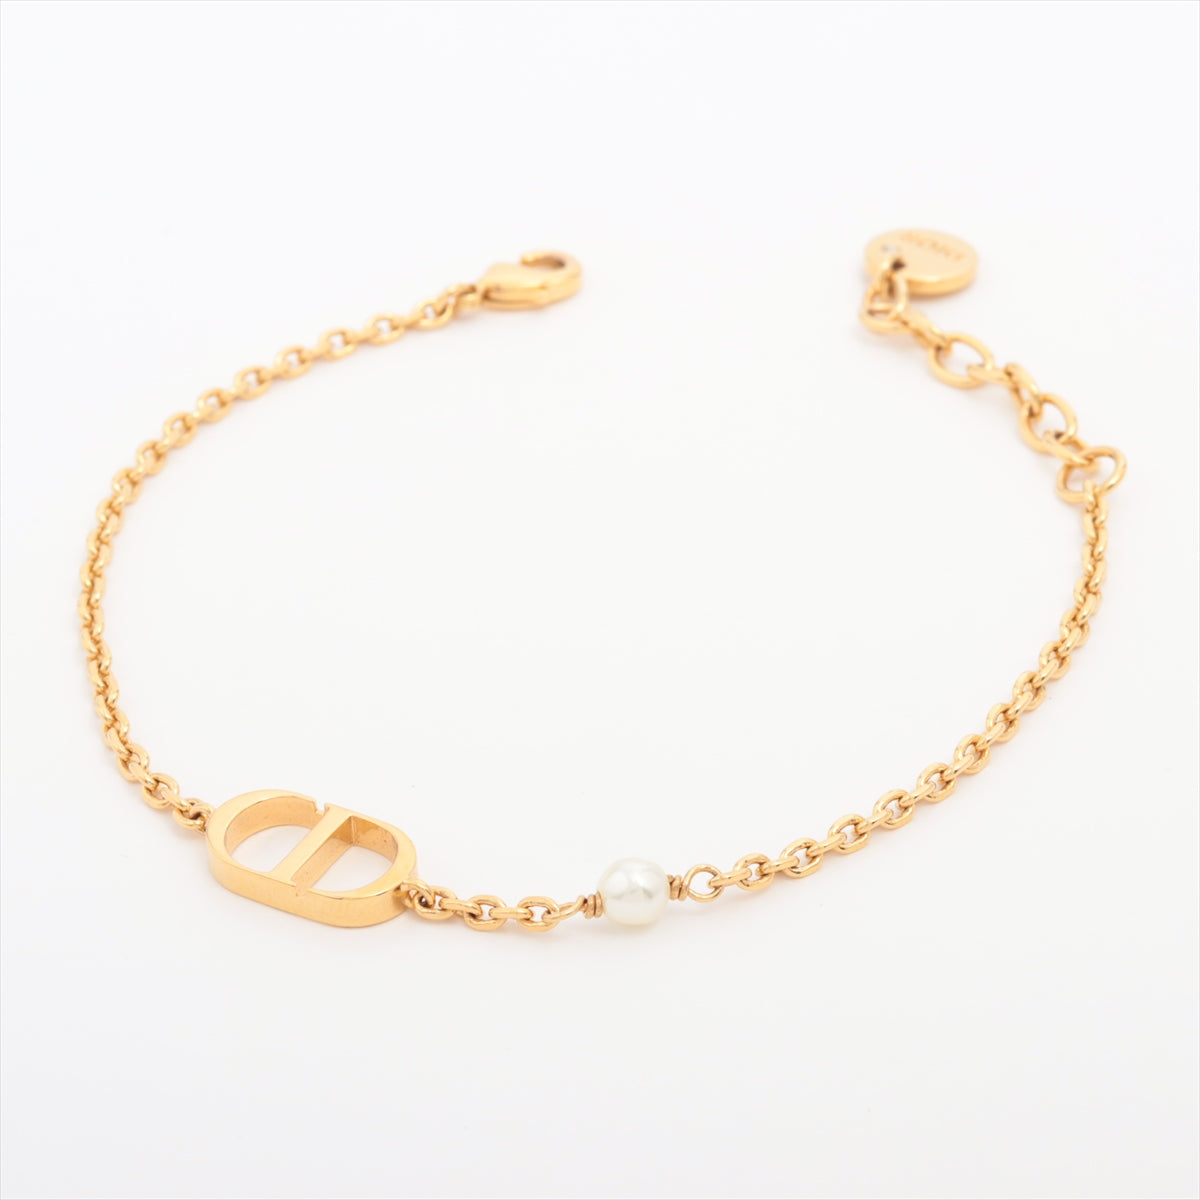 Marina branch Dior bracelet 18 karat gold weight 1044 grams  مصاغات  الأربش للذهب بالسعودية قسم المتجر الإلكتروني